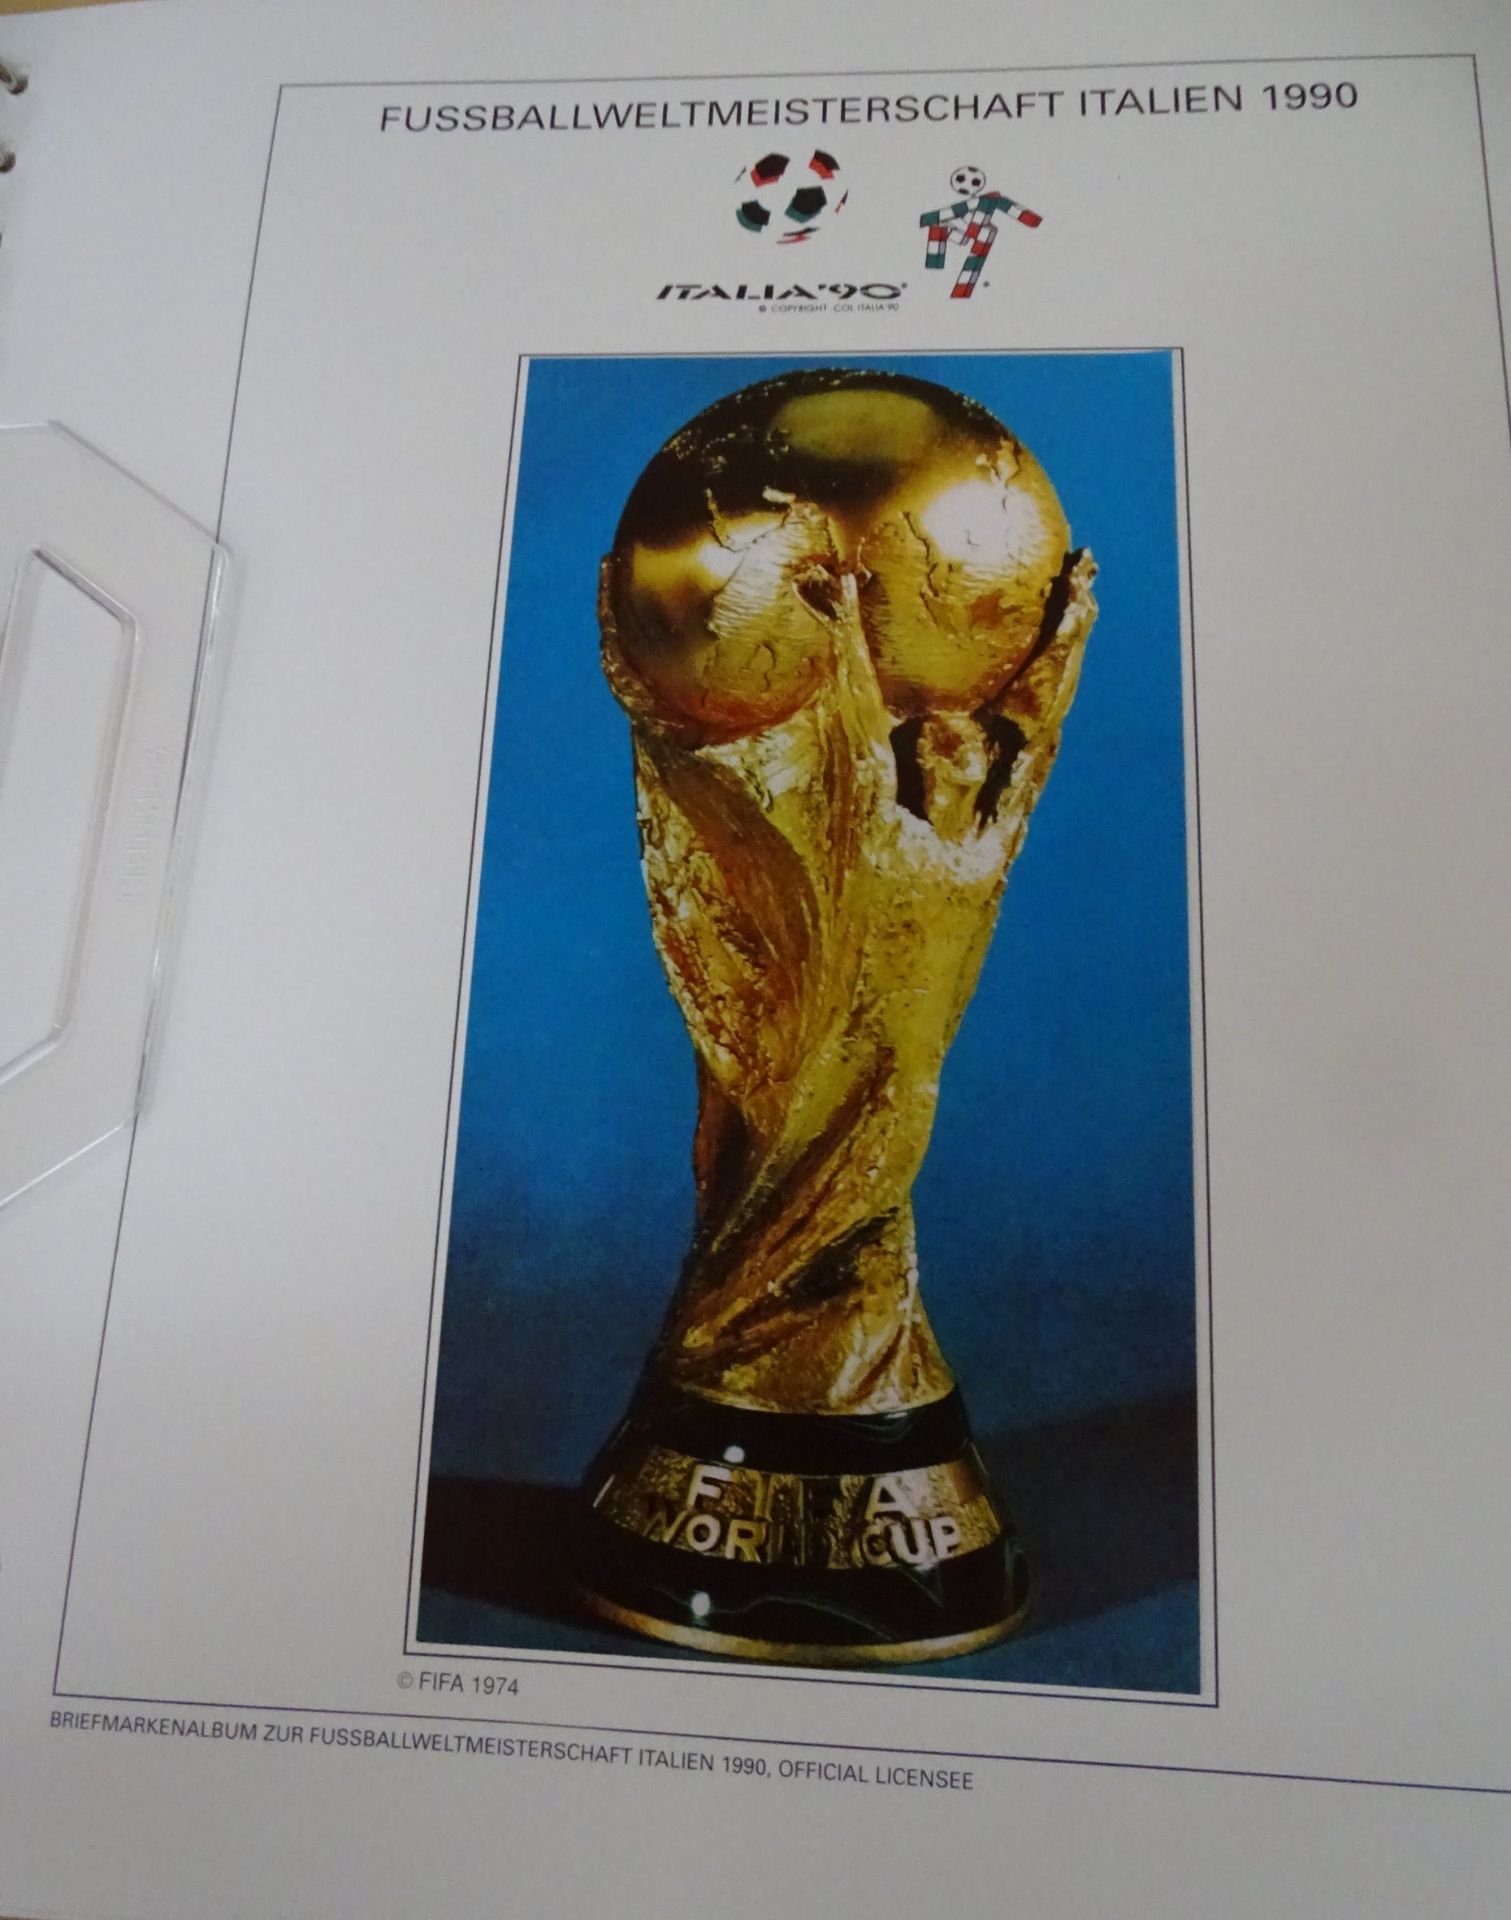 4x lomplette Linbder Ordner  "Italia 90" Briefmarkenalbum zur Fussball- Weltmeisterschaft, official - Bild 2 aus 13